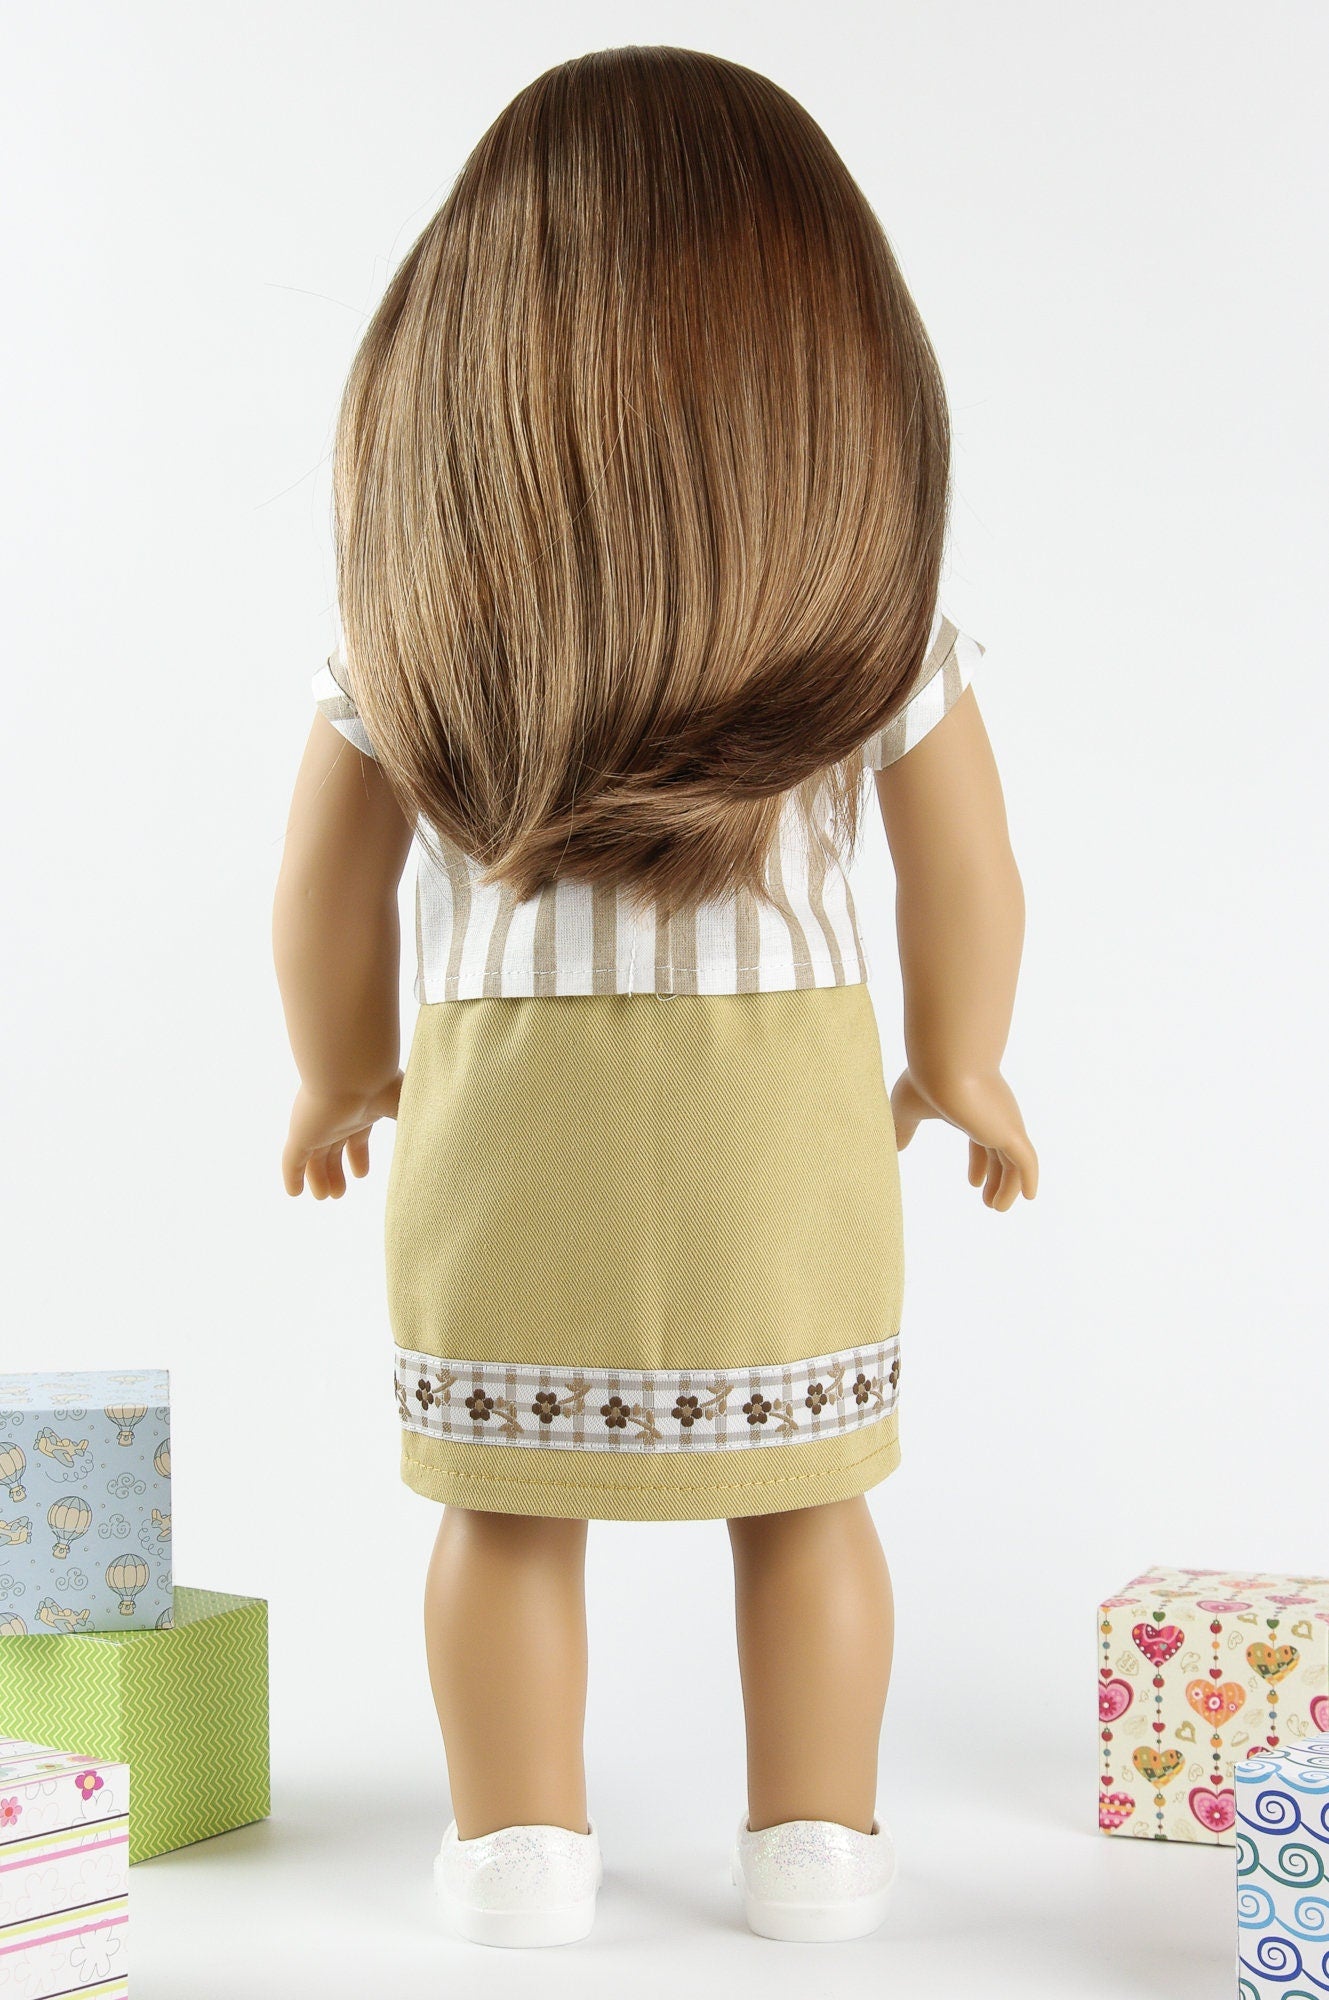 Doll Skirt 